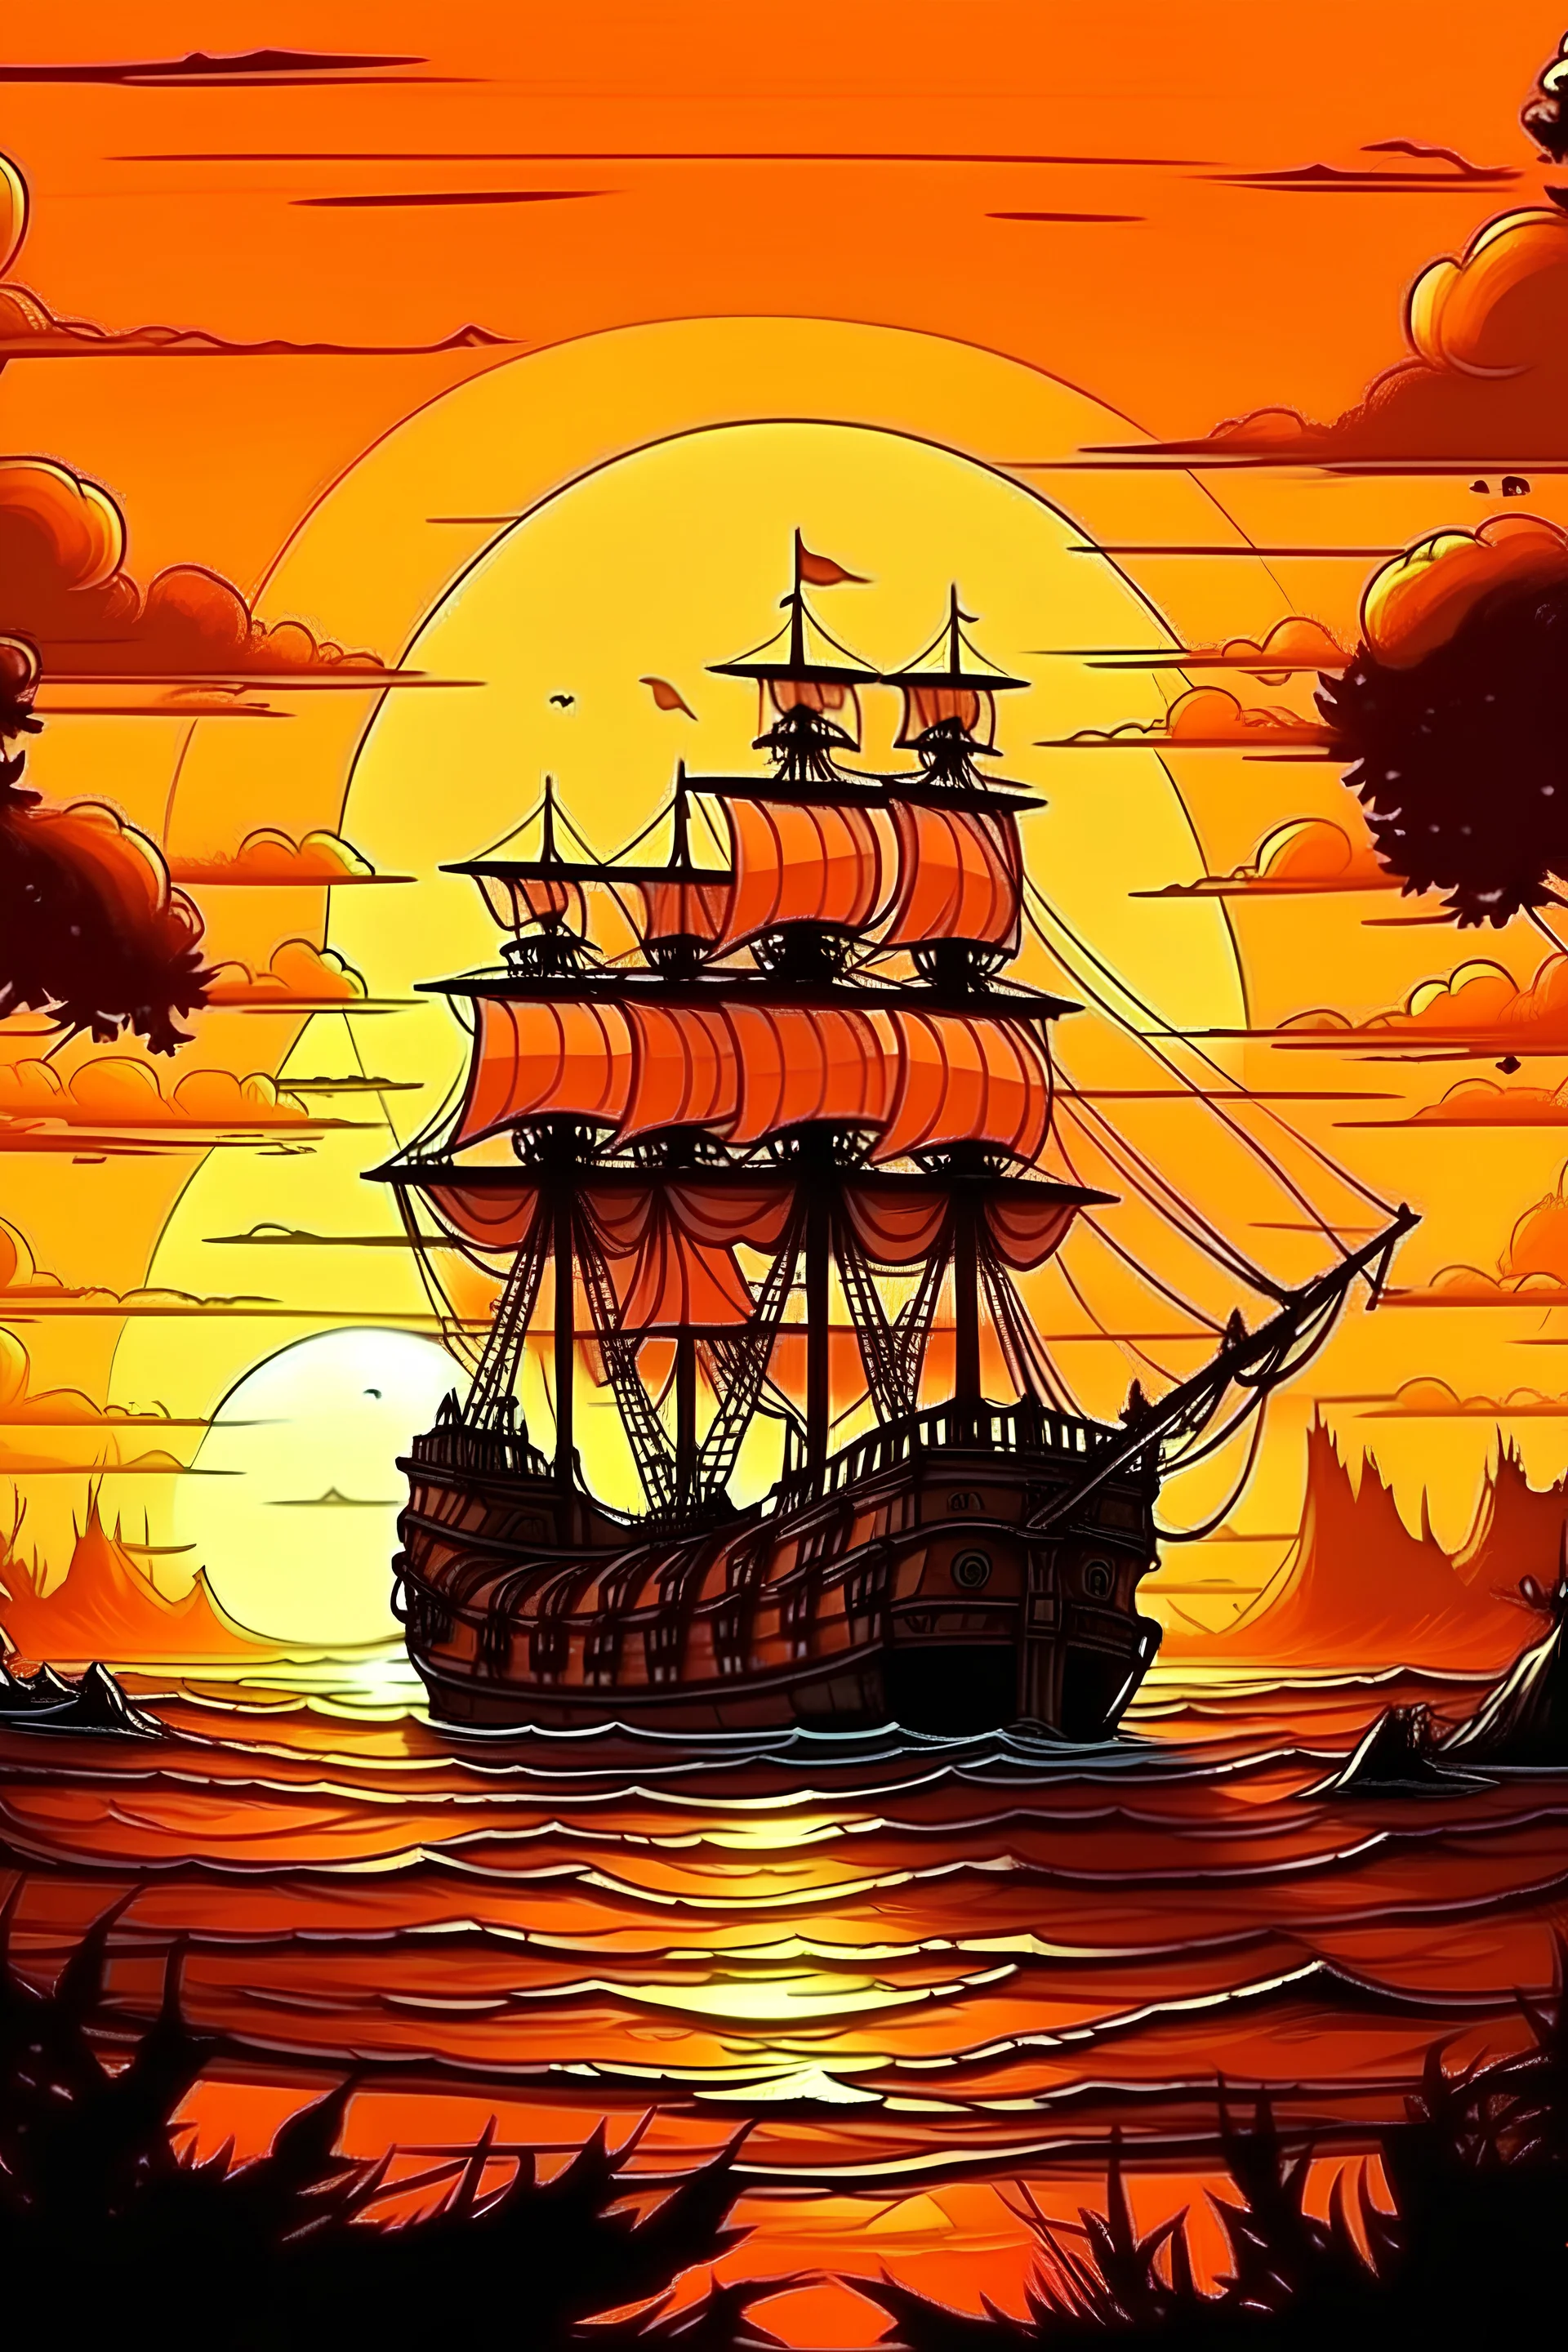 atardecer con mar de fondo y barco pirata con estilo real